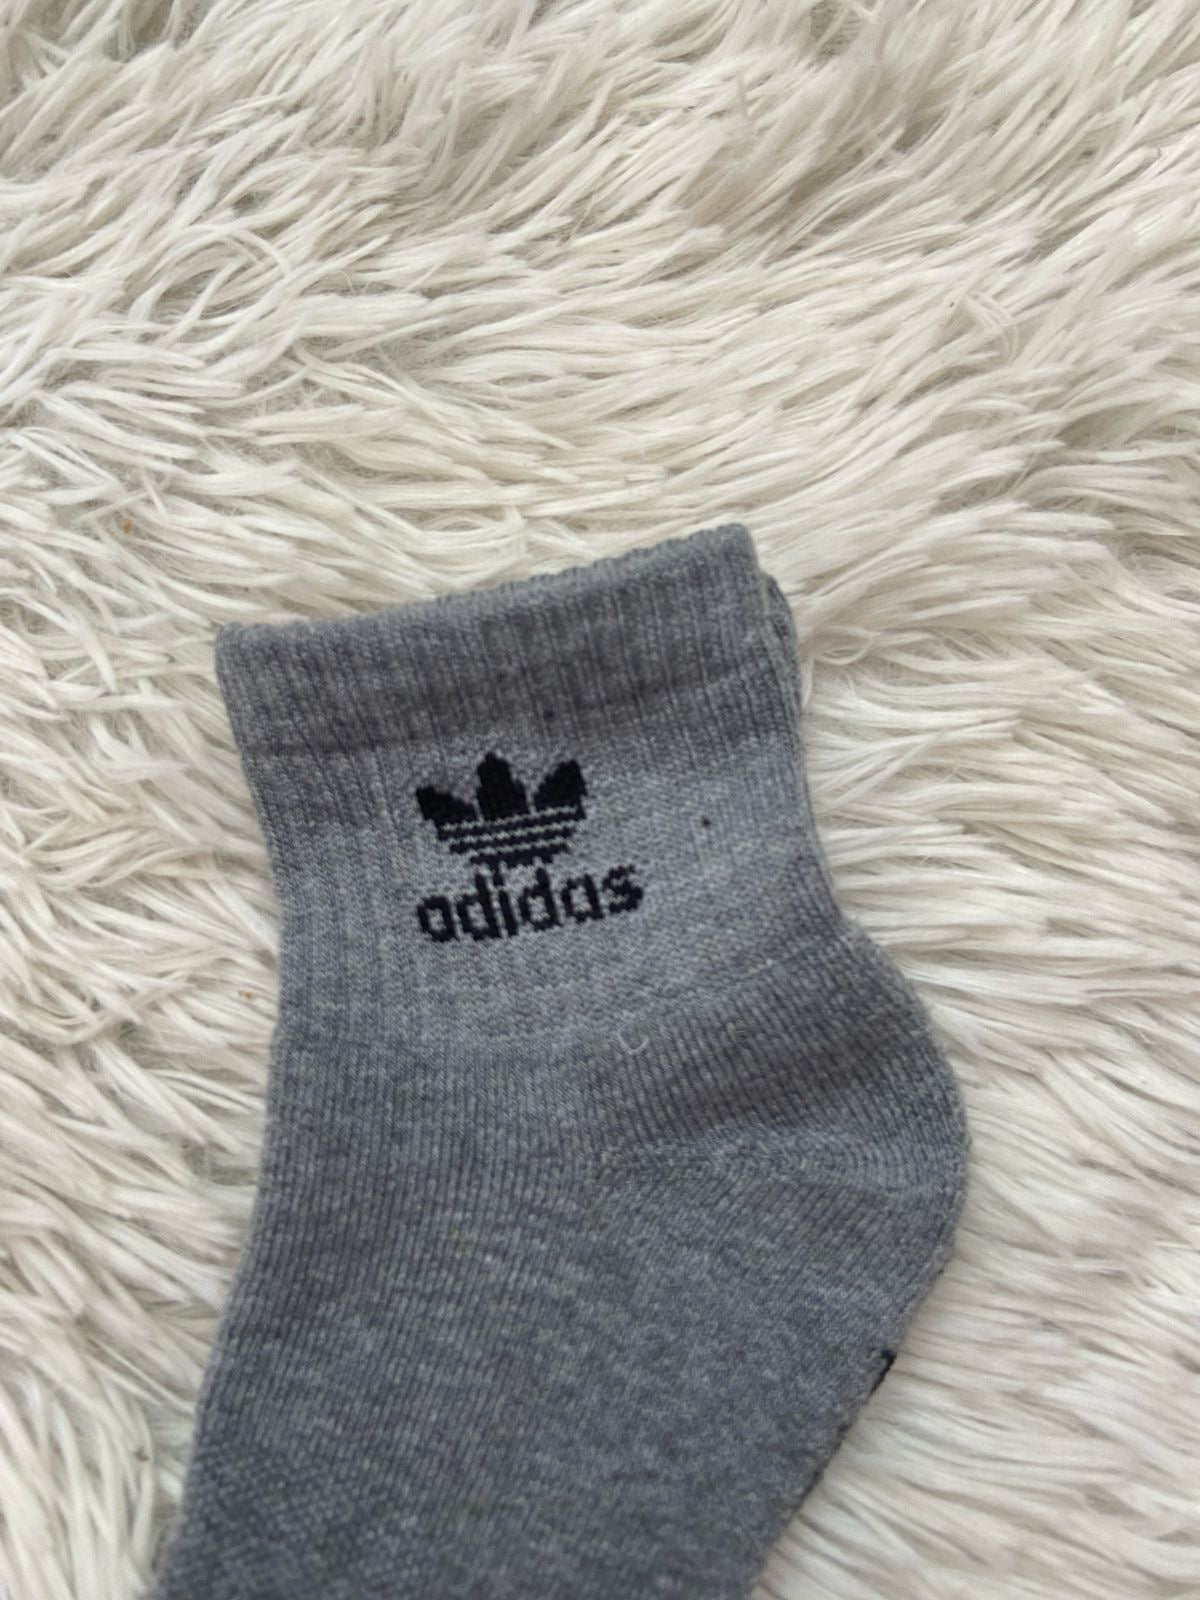 Medias Adidas Original gris con Logotipo negro